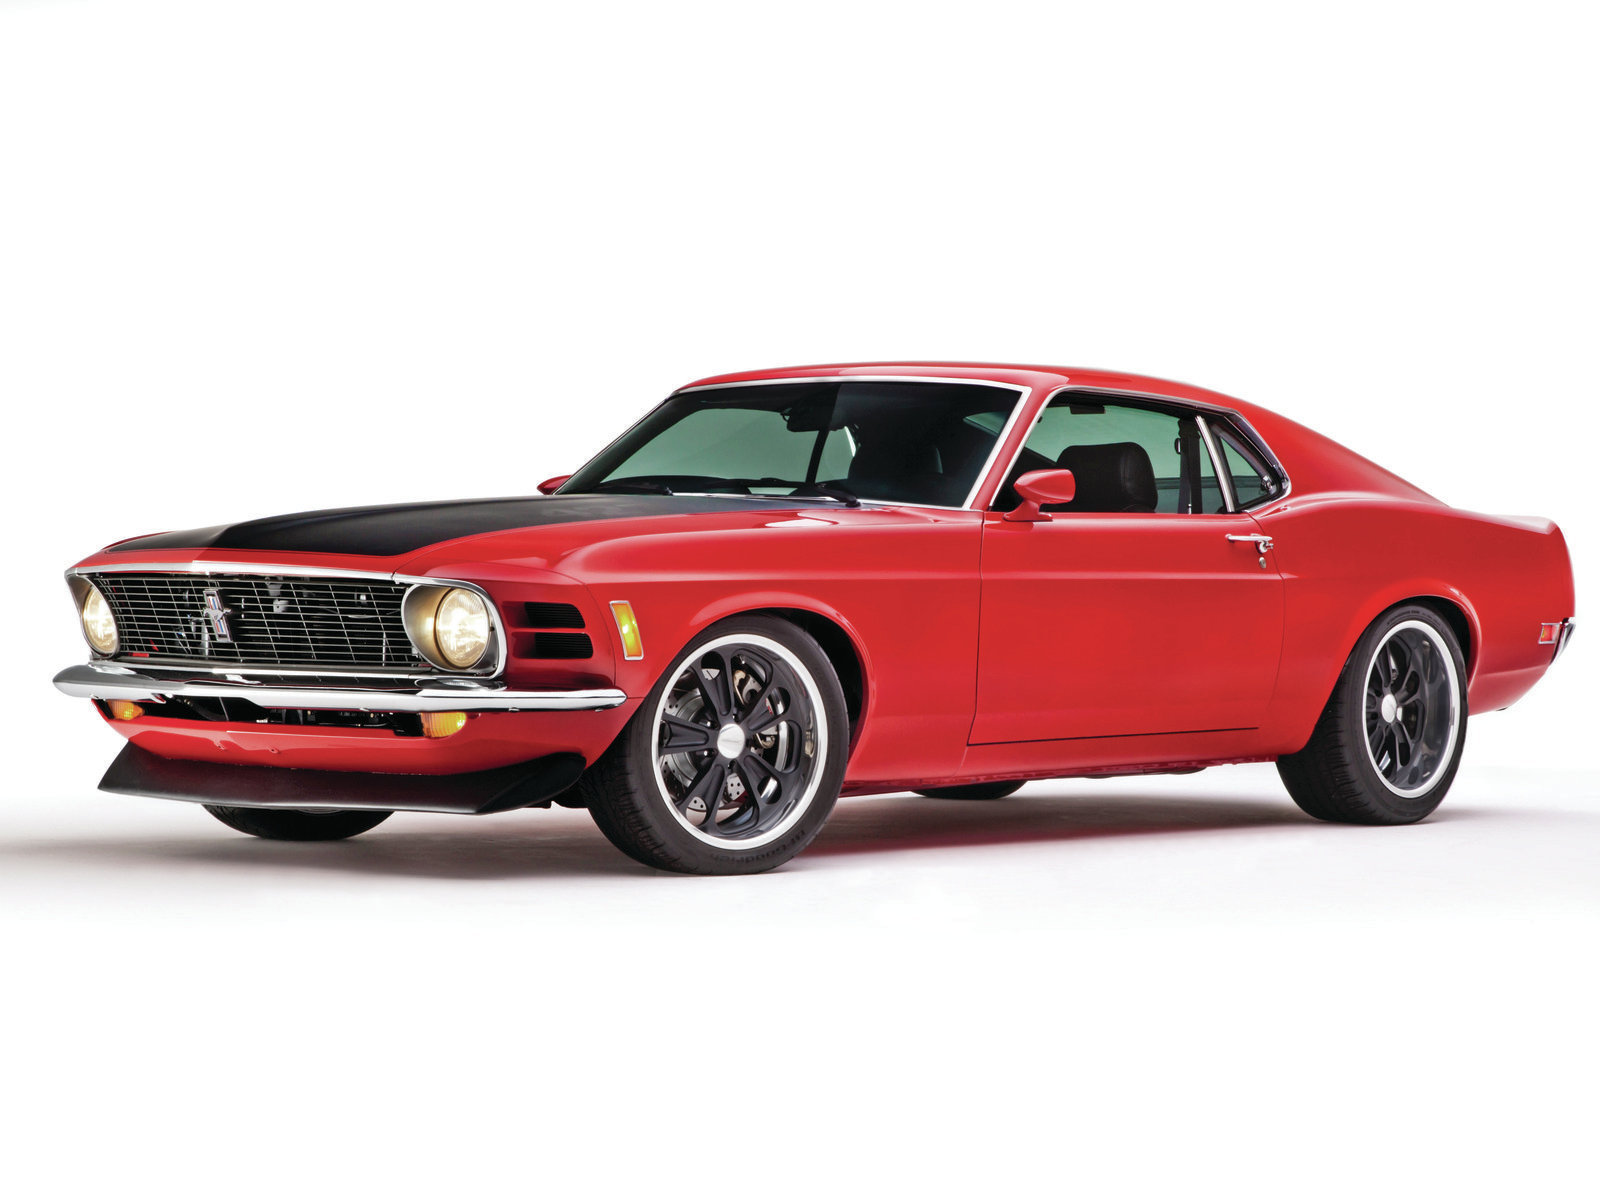 High Resolution Wallpaper | 1970 Mustang 1600x1200 px